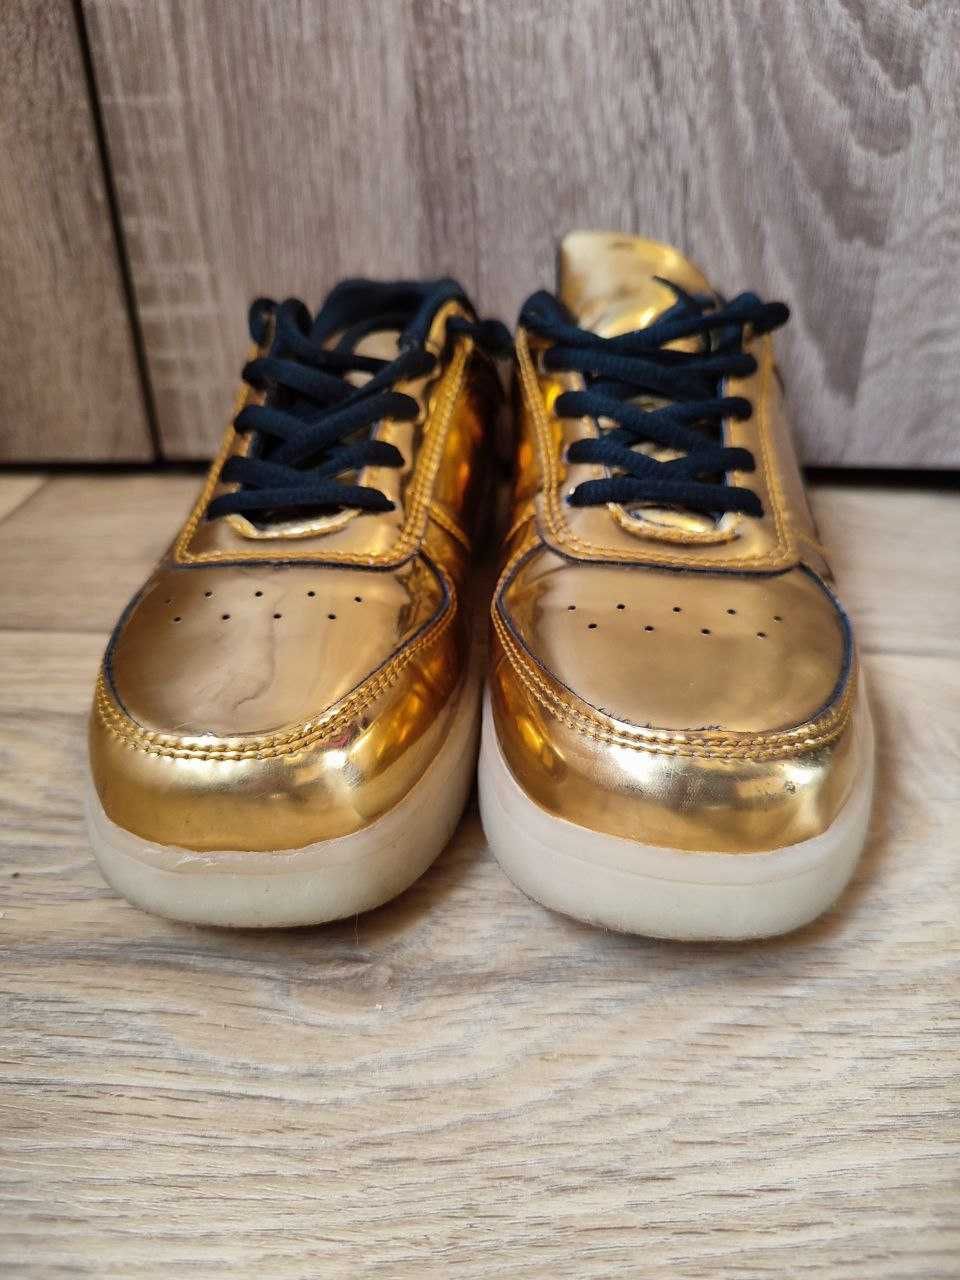 Кроссовки стильные золотые, от французского бренда, размер 36